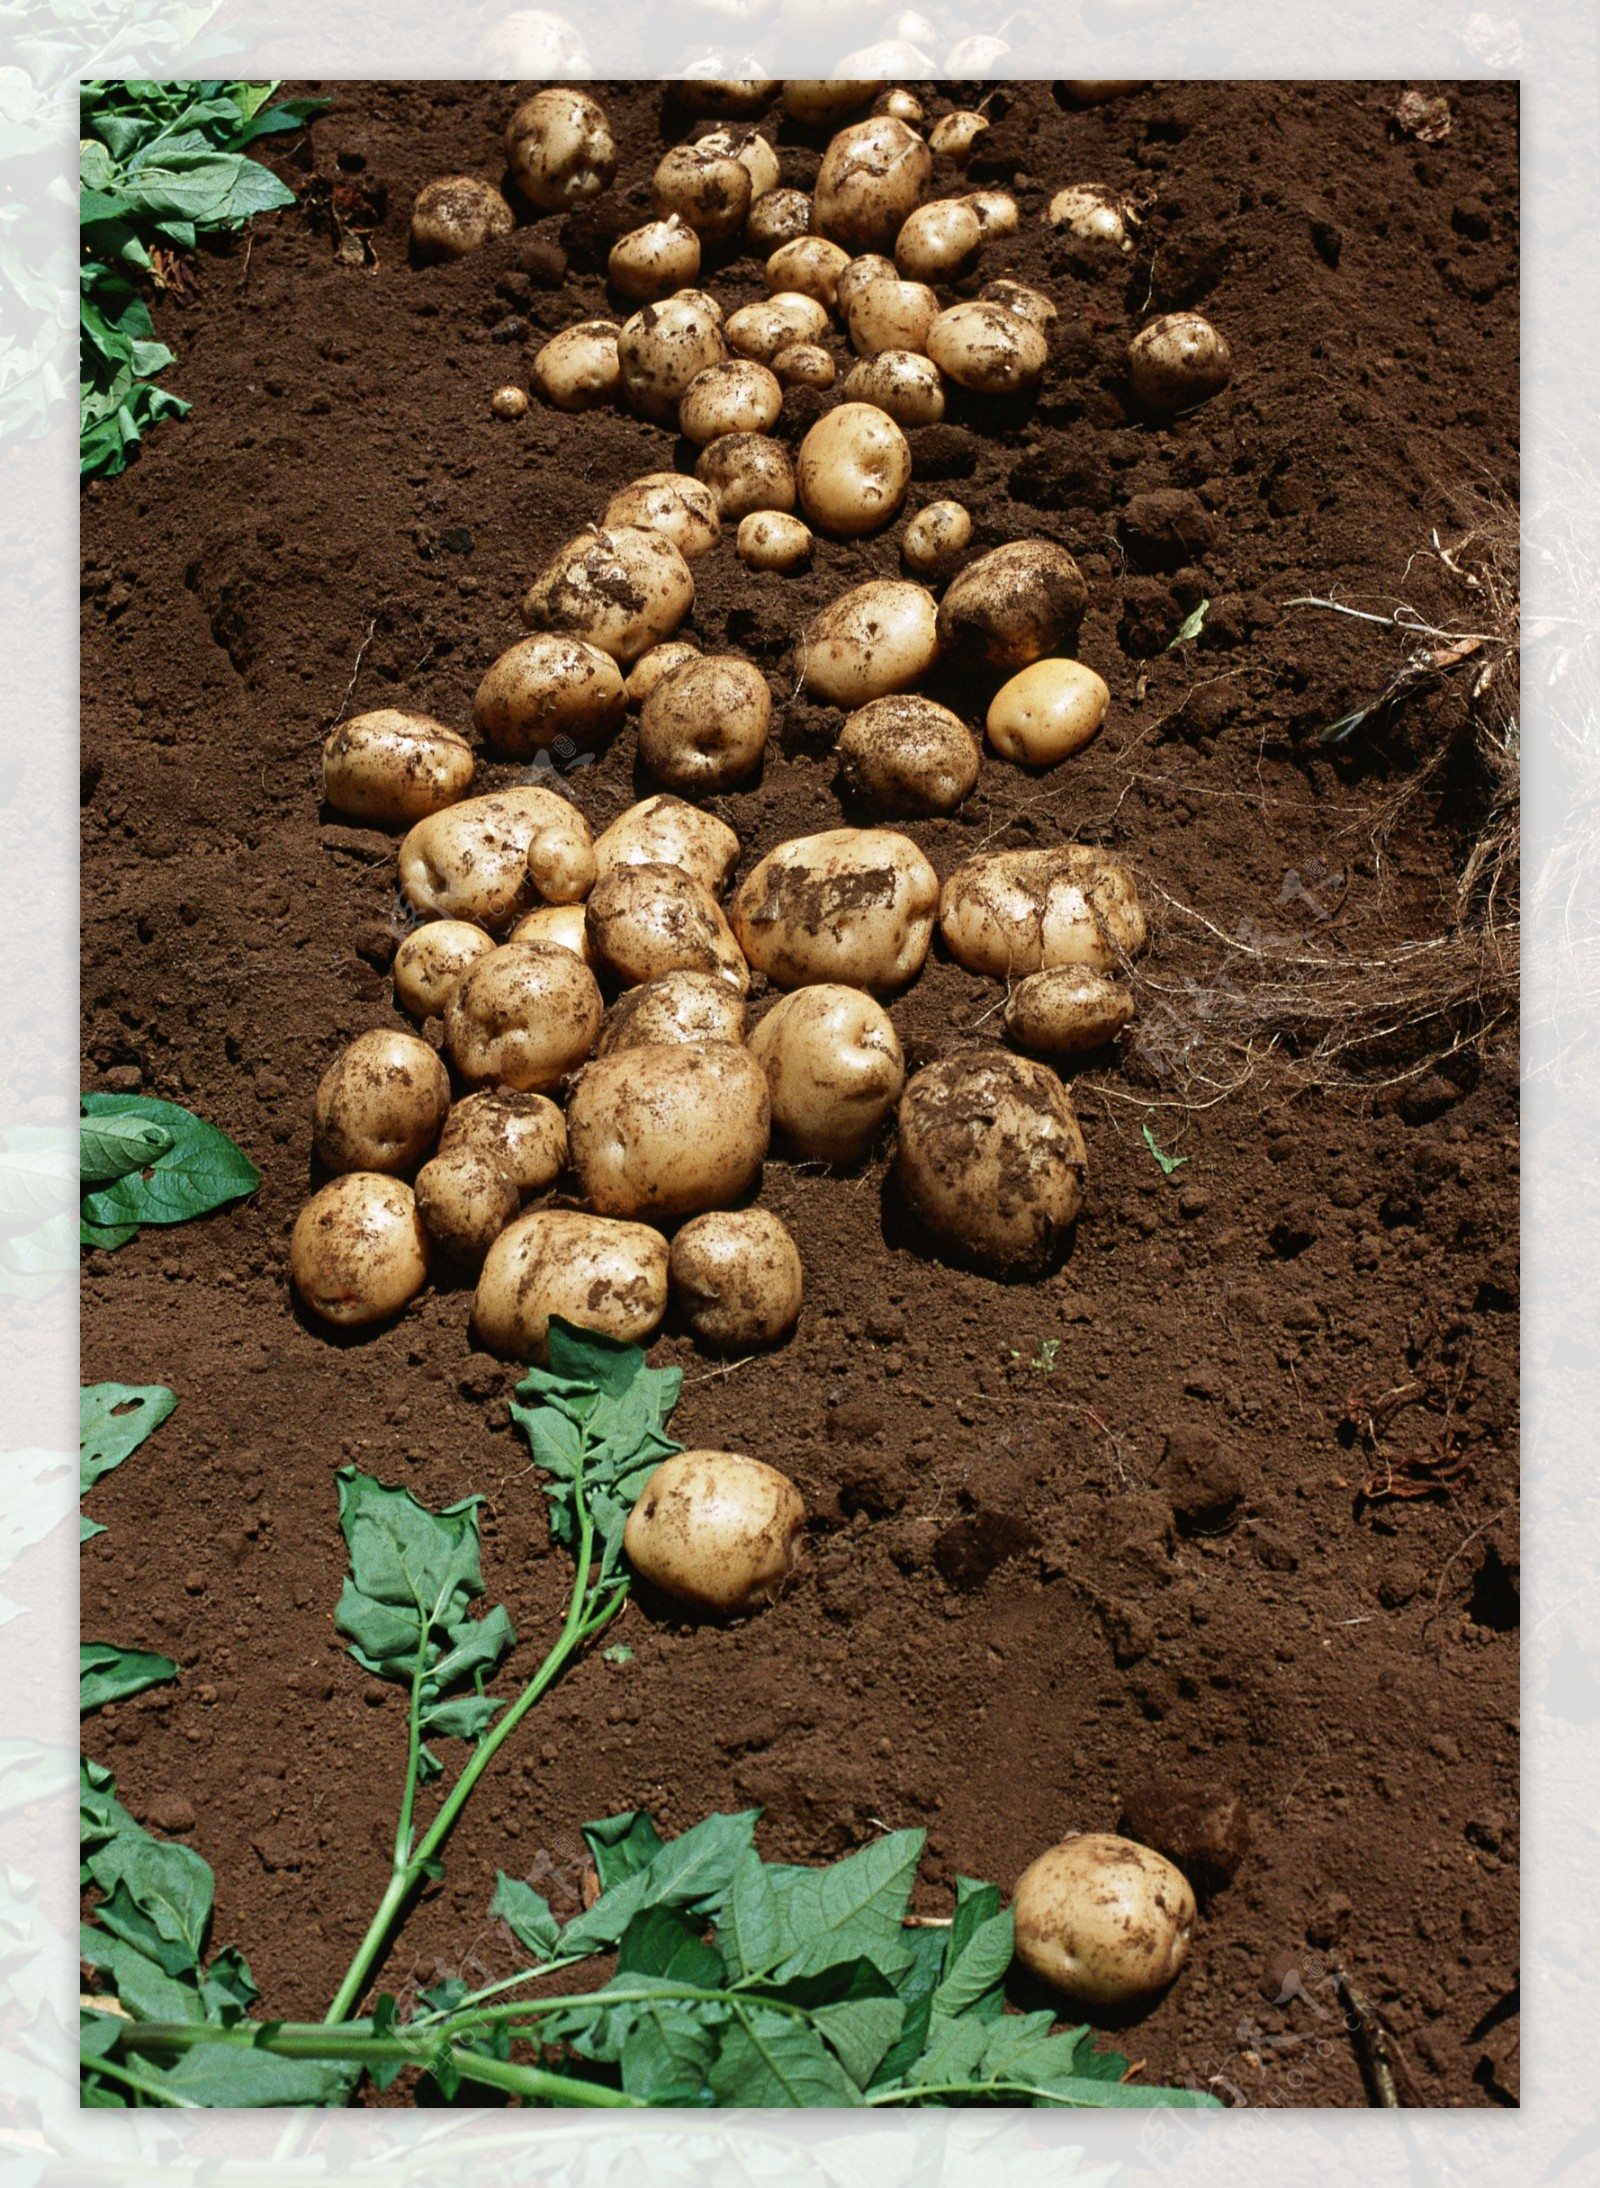 農家土豆收穫圖片素材-JPG圖片尺寸5760 × 3840px-高清圖案501286103-zh.lovepik.com